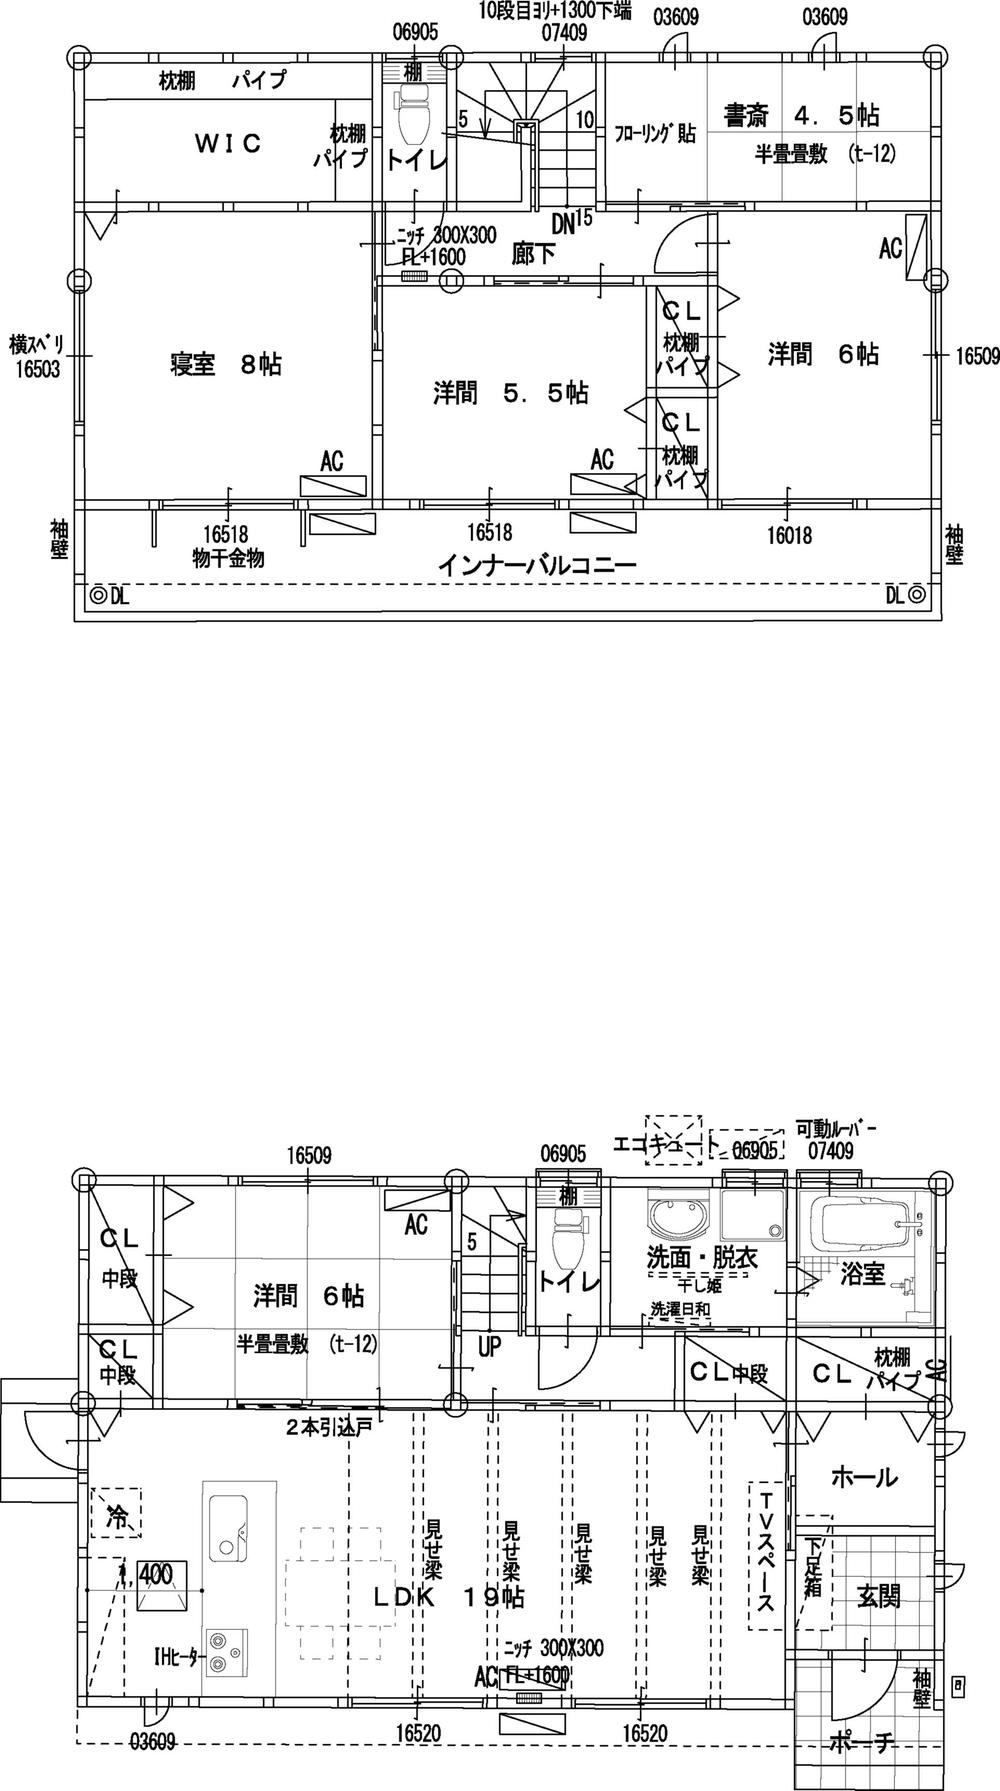 Floor plan. 22,200,000 yen, 4LDK + S (storeroom), Land area 174.92 sq m , Building area 122.7 sq m Floor, Storage is also plenty of